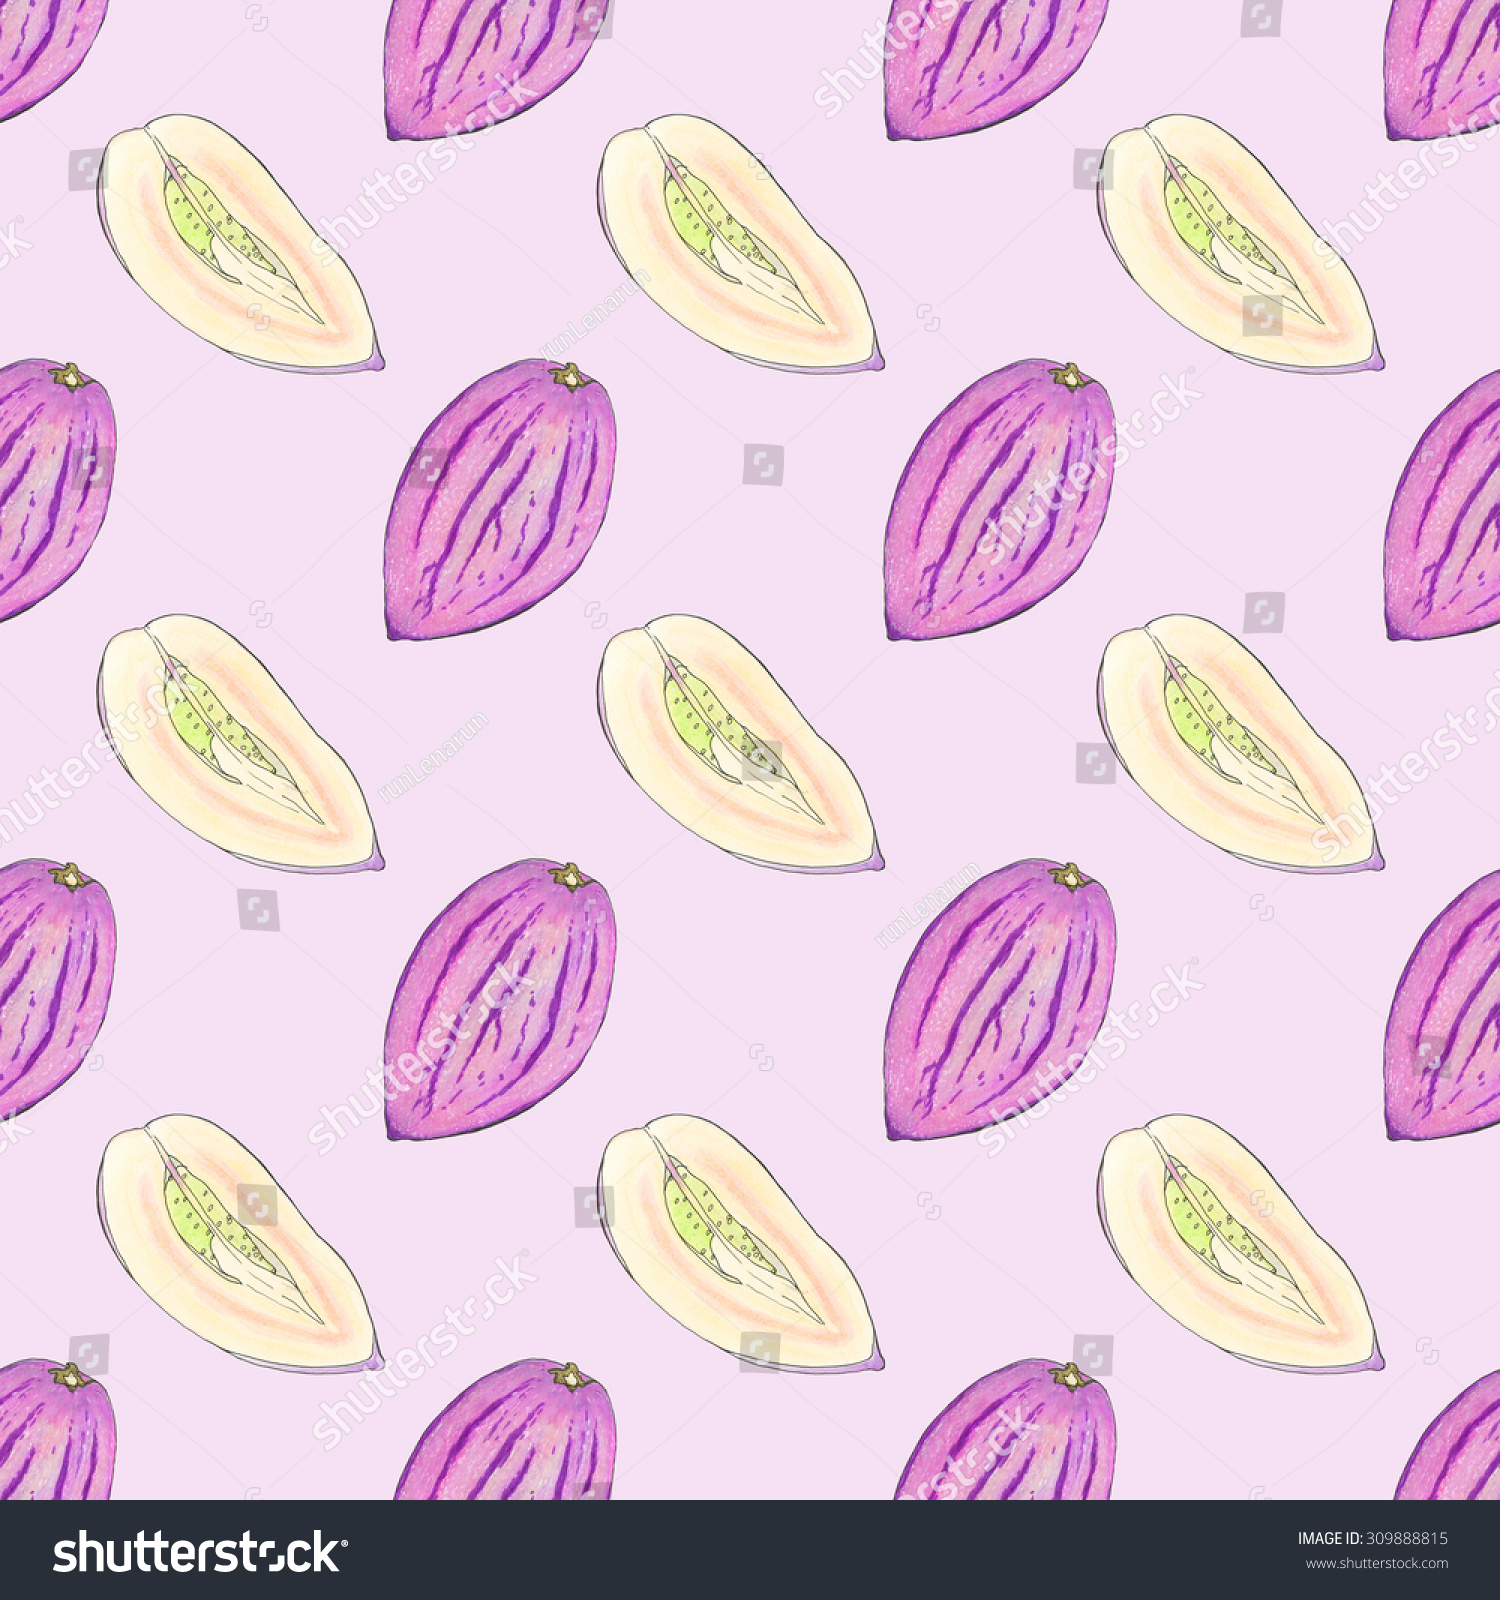 Pepino Melon Seamless Pattern Fruits Handdrawn Stock Illustration ...